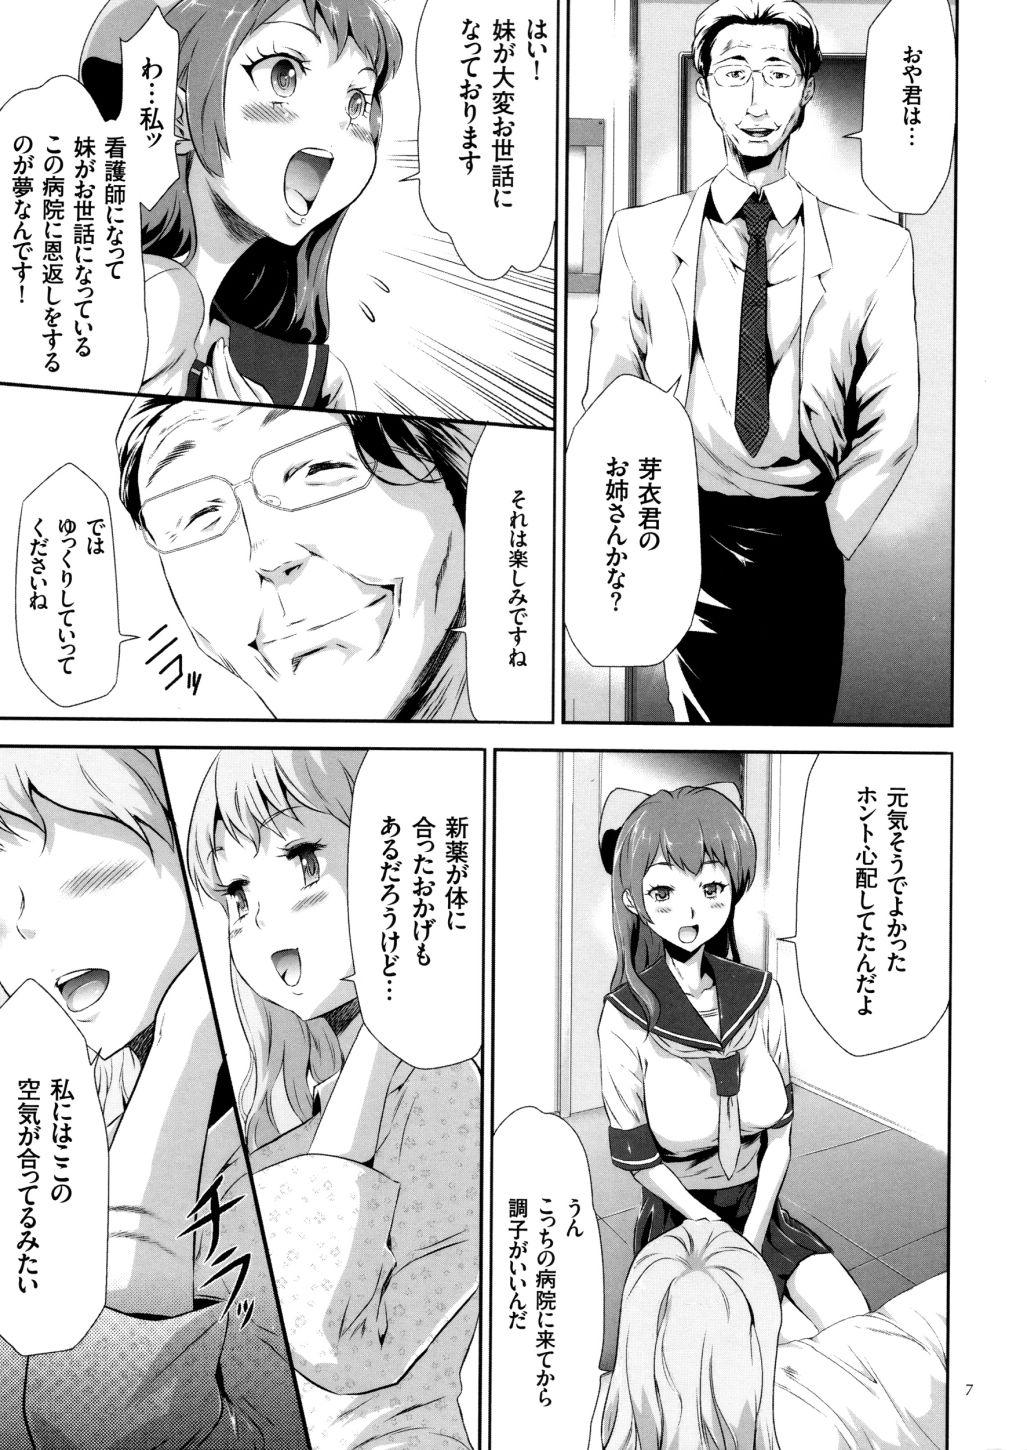 Corno Sekenshirazu na Seisokei JK Kankin Yakubutsu Sennou de Do-M Gangu ni Naru Chacal - Page 8